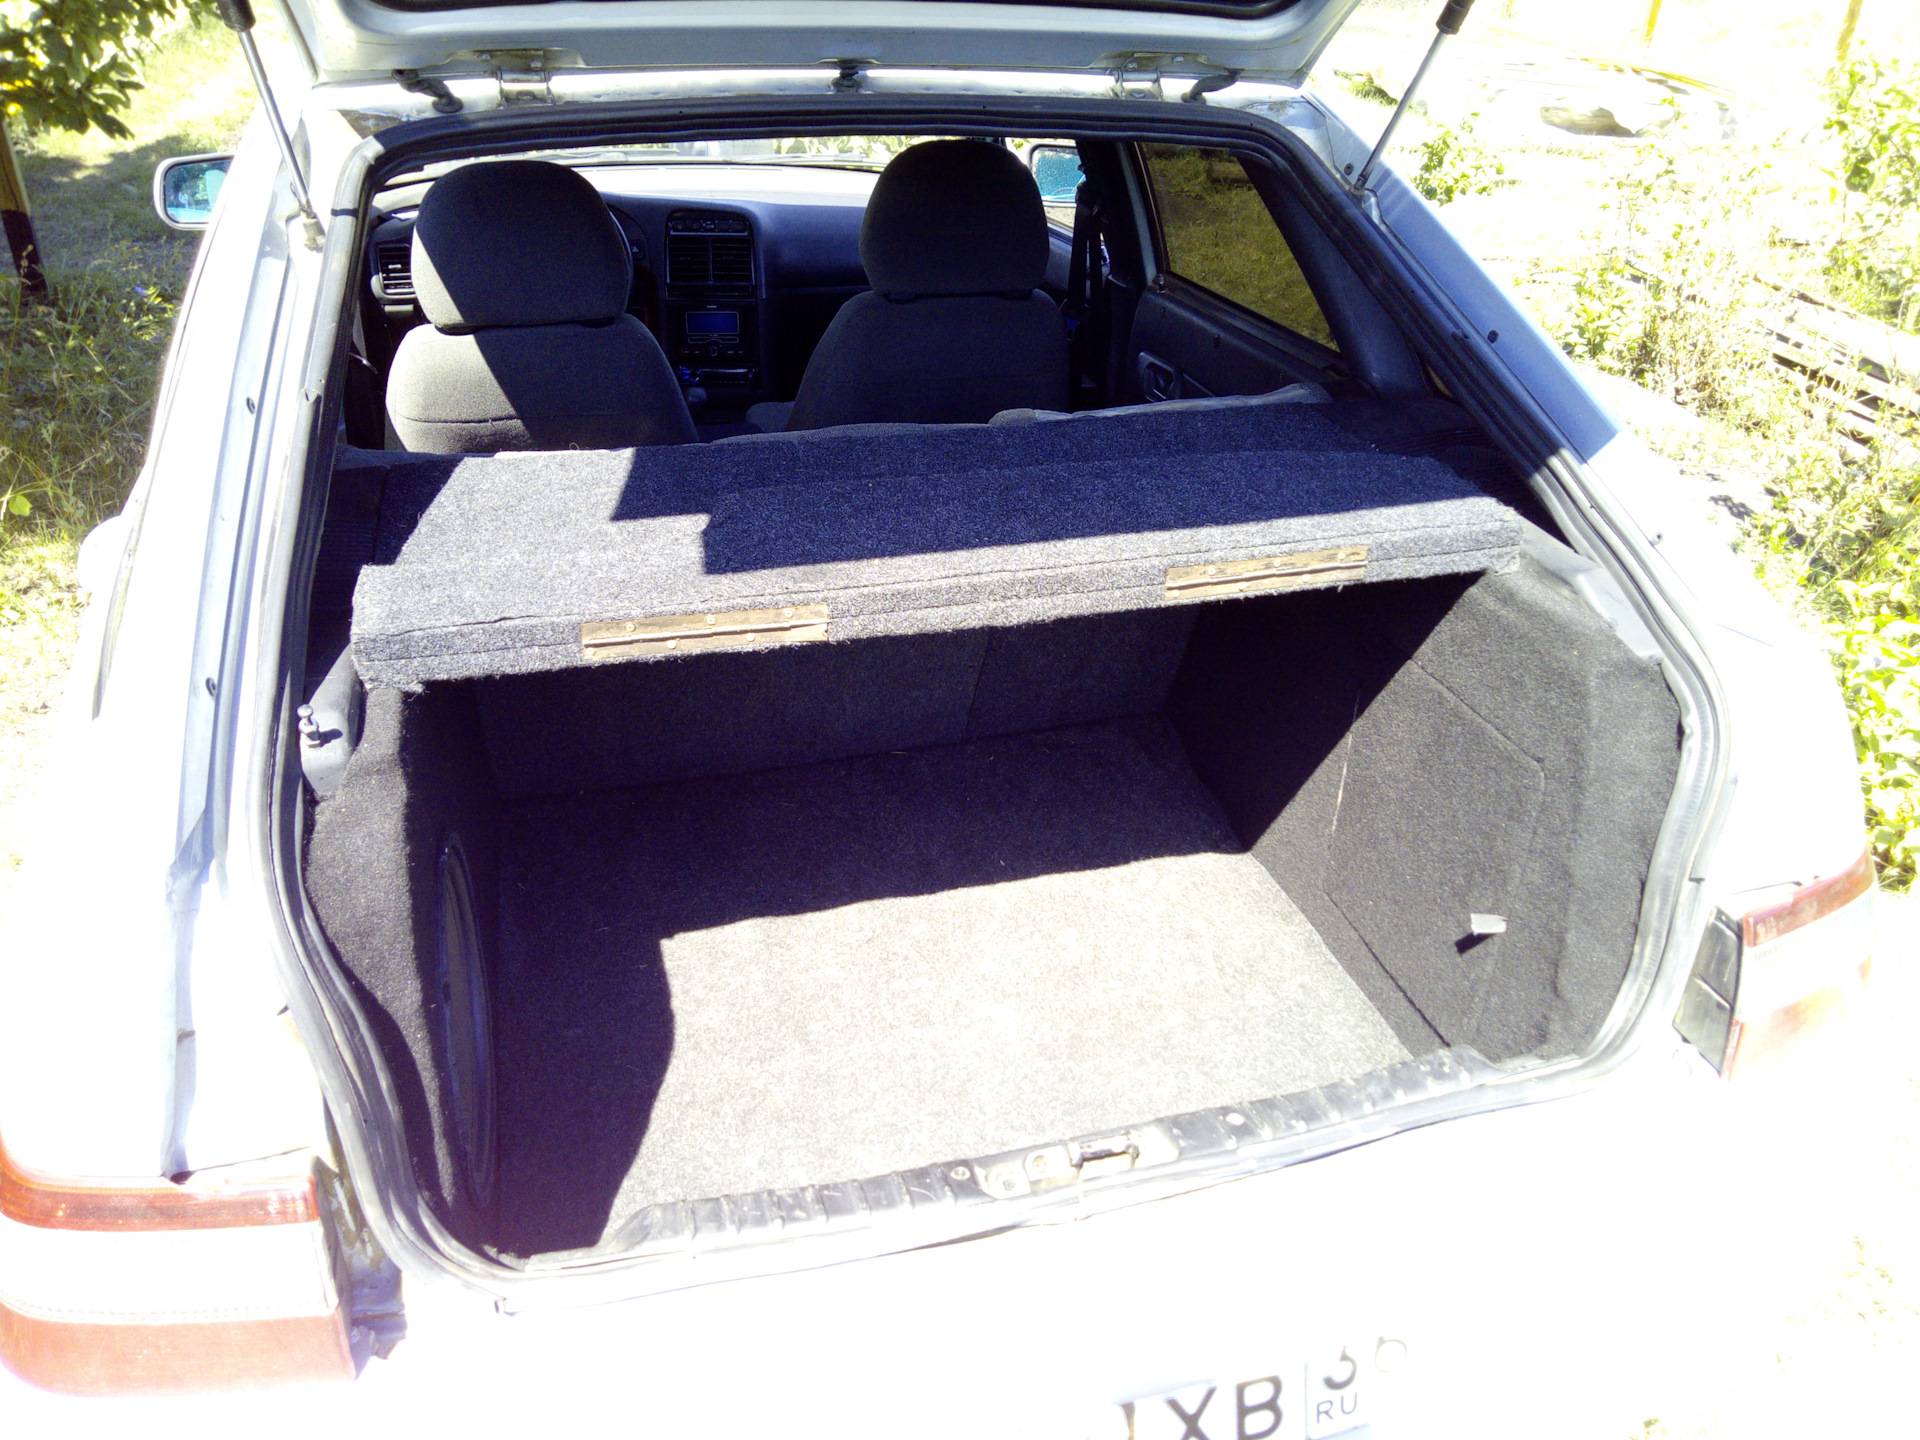 Размеры багажника ваз-2112 в сантиметрах – taxi bolt